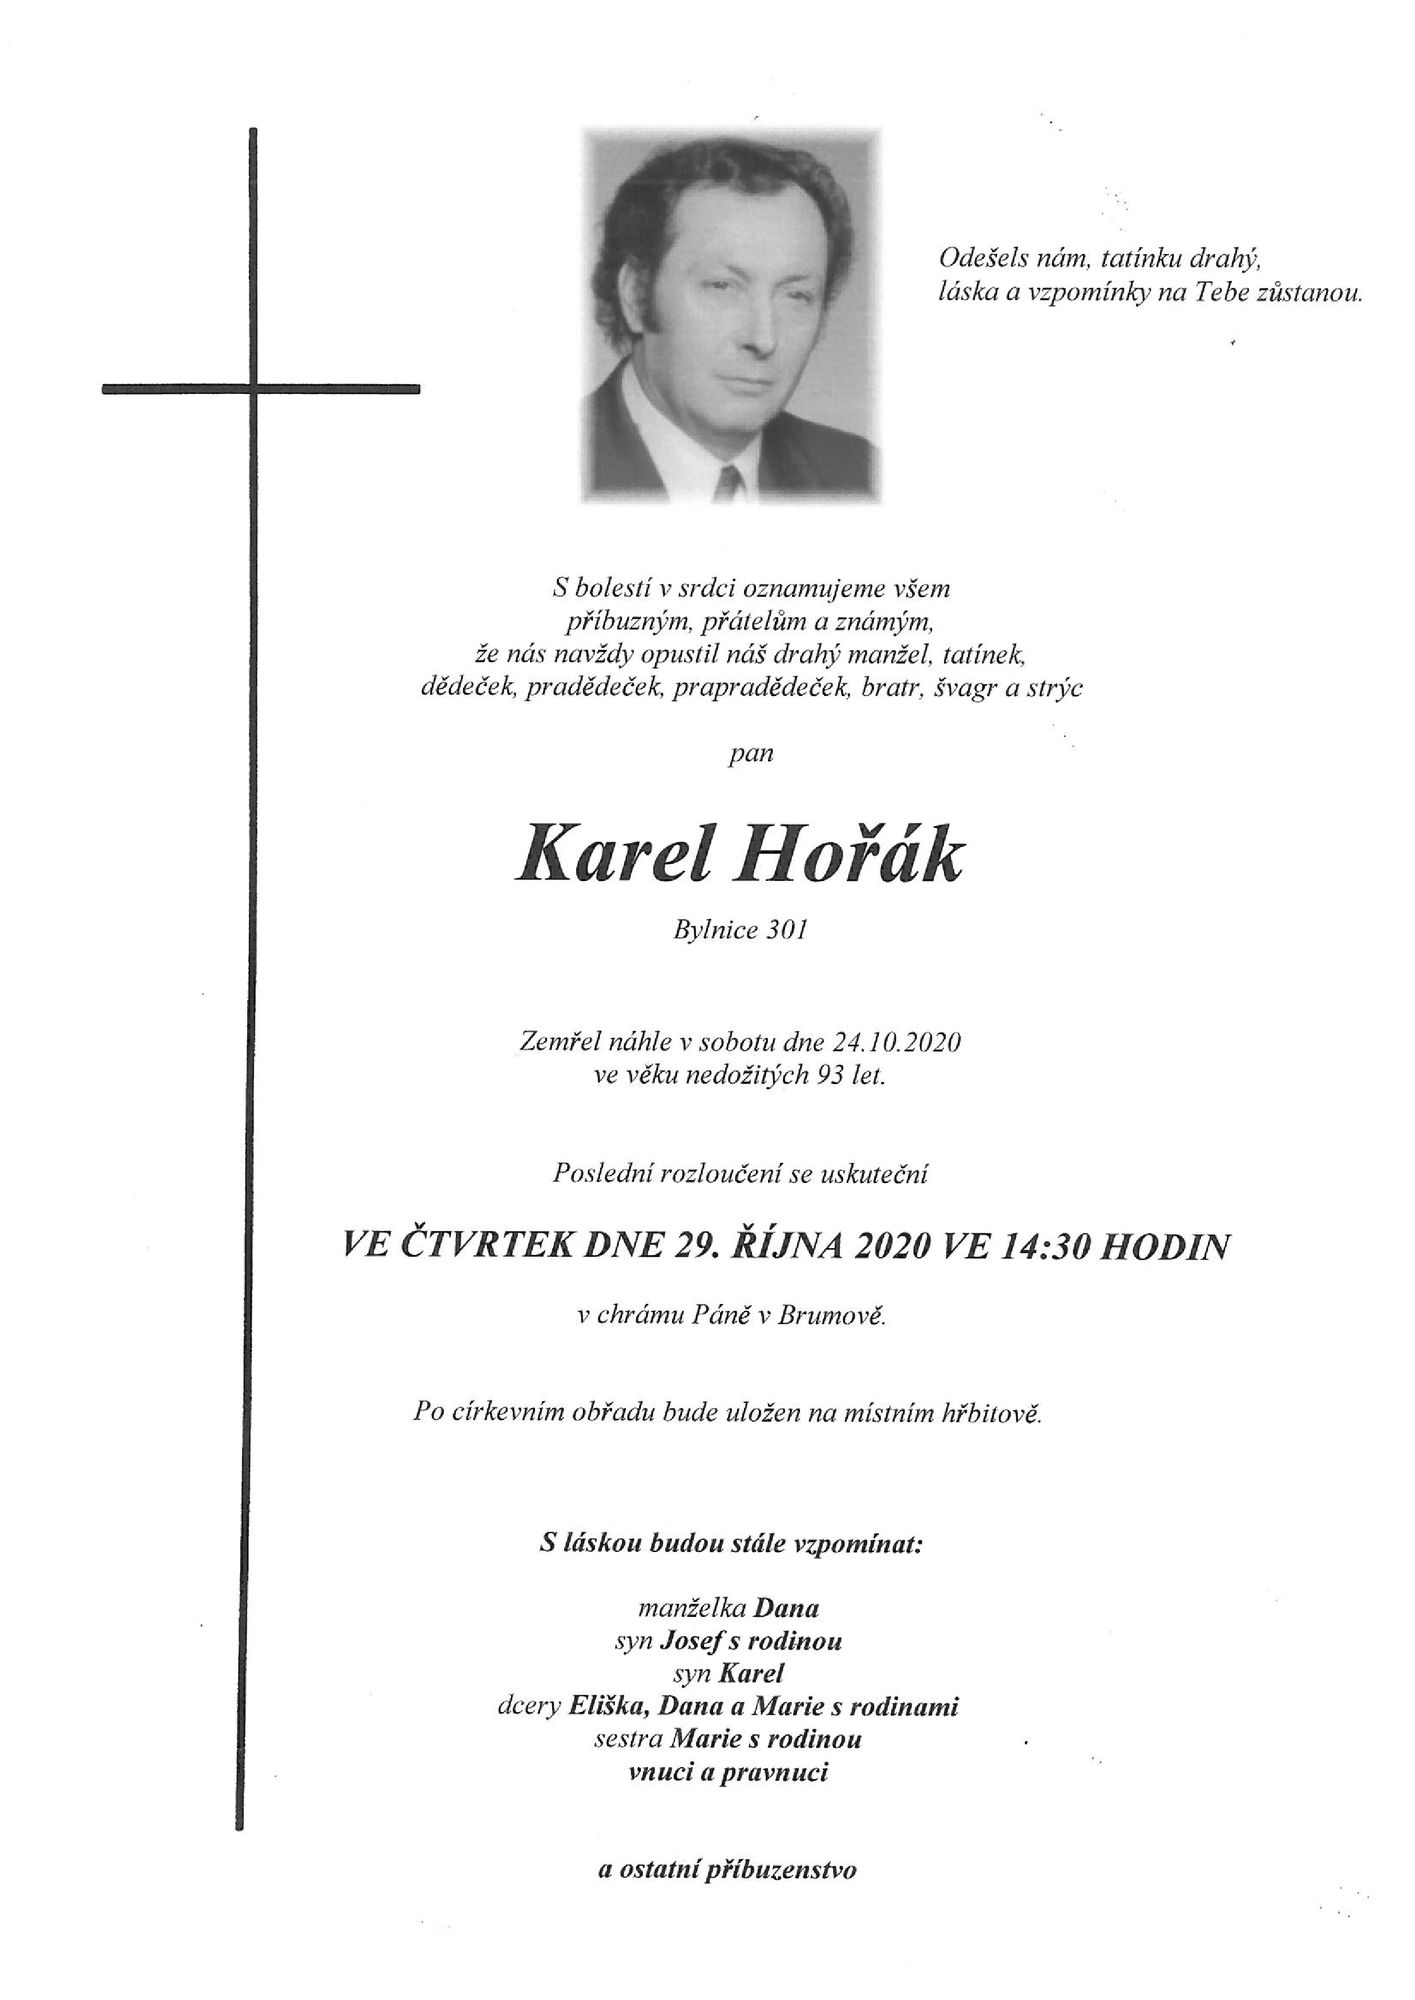 Karel Hořák